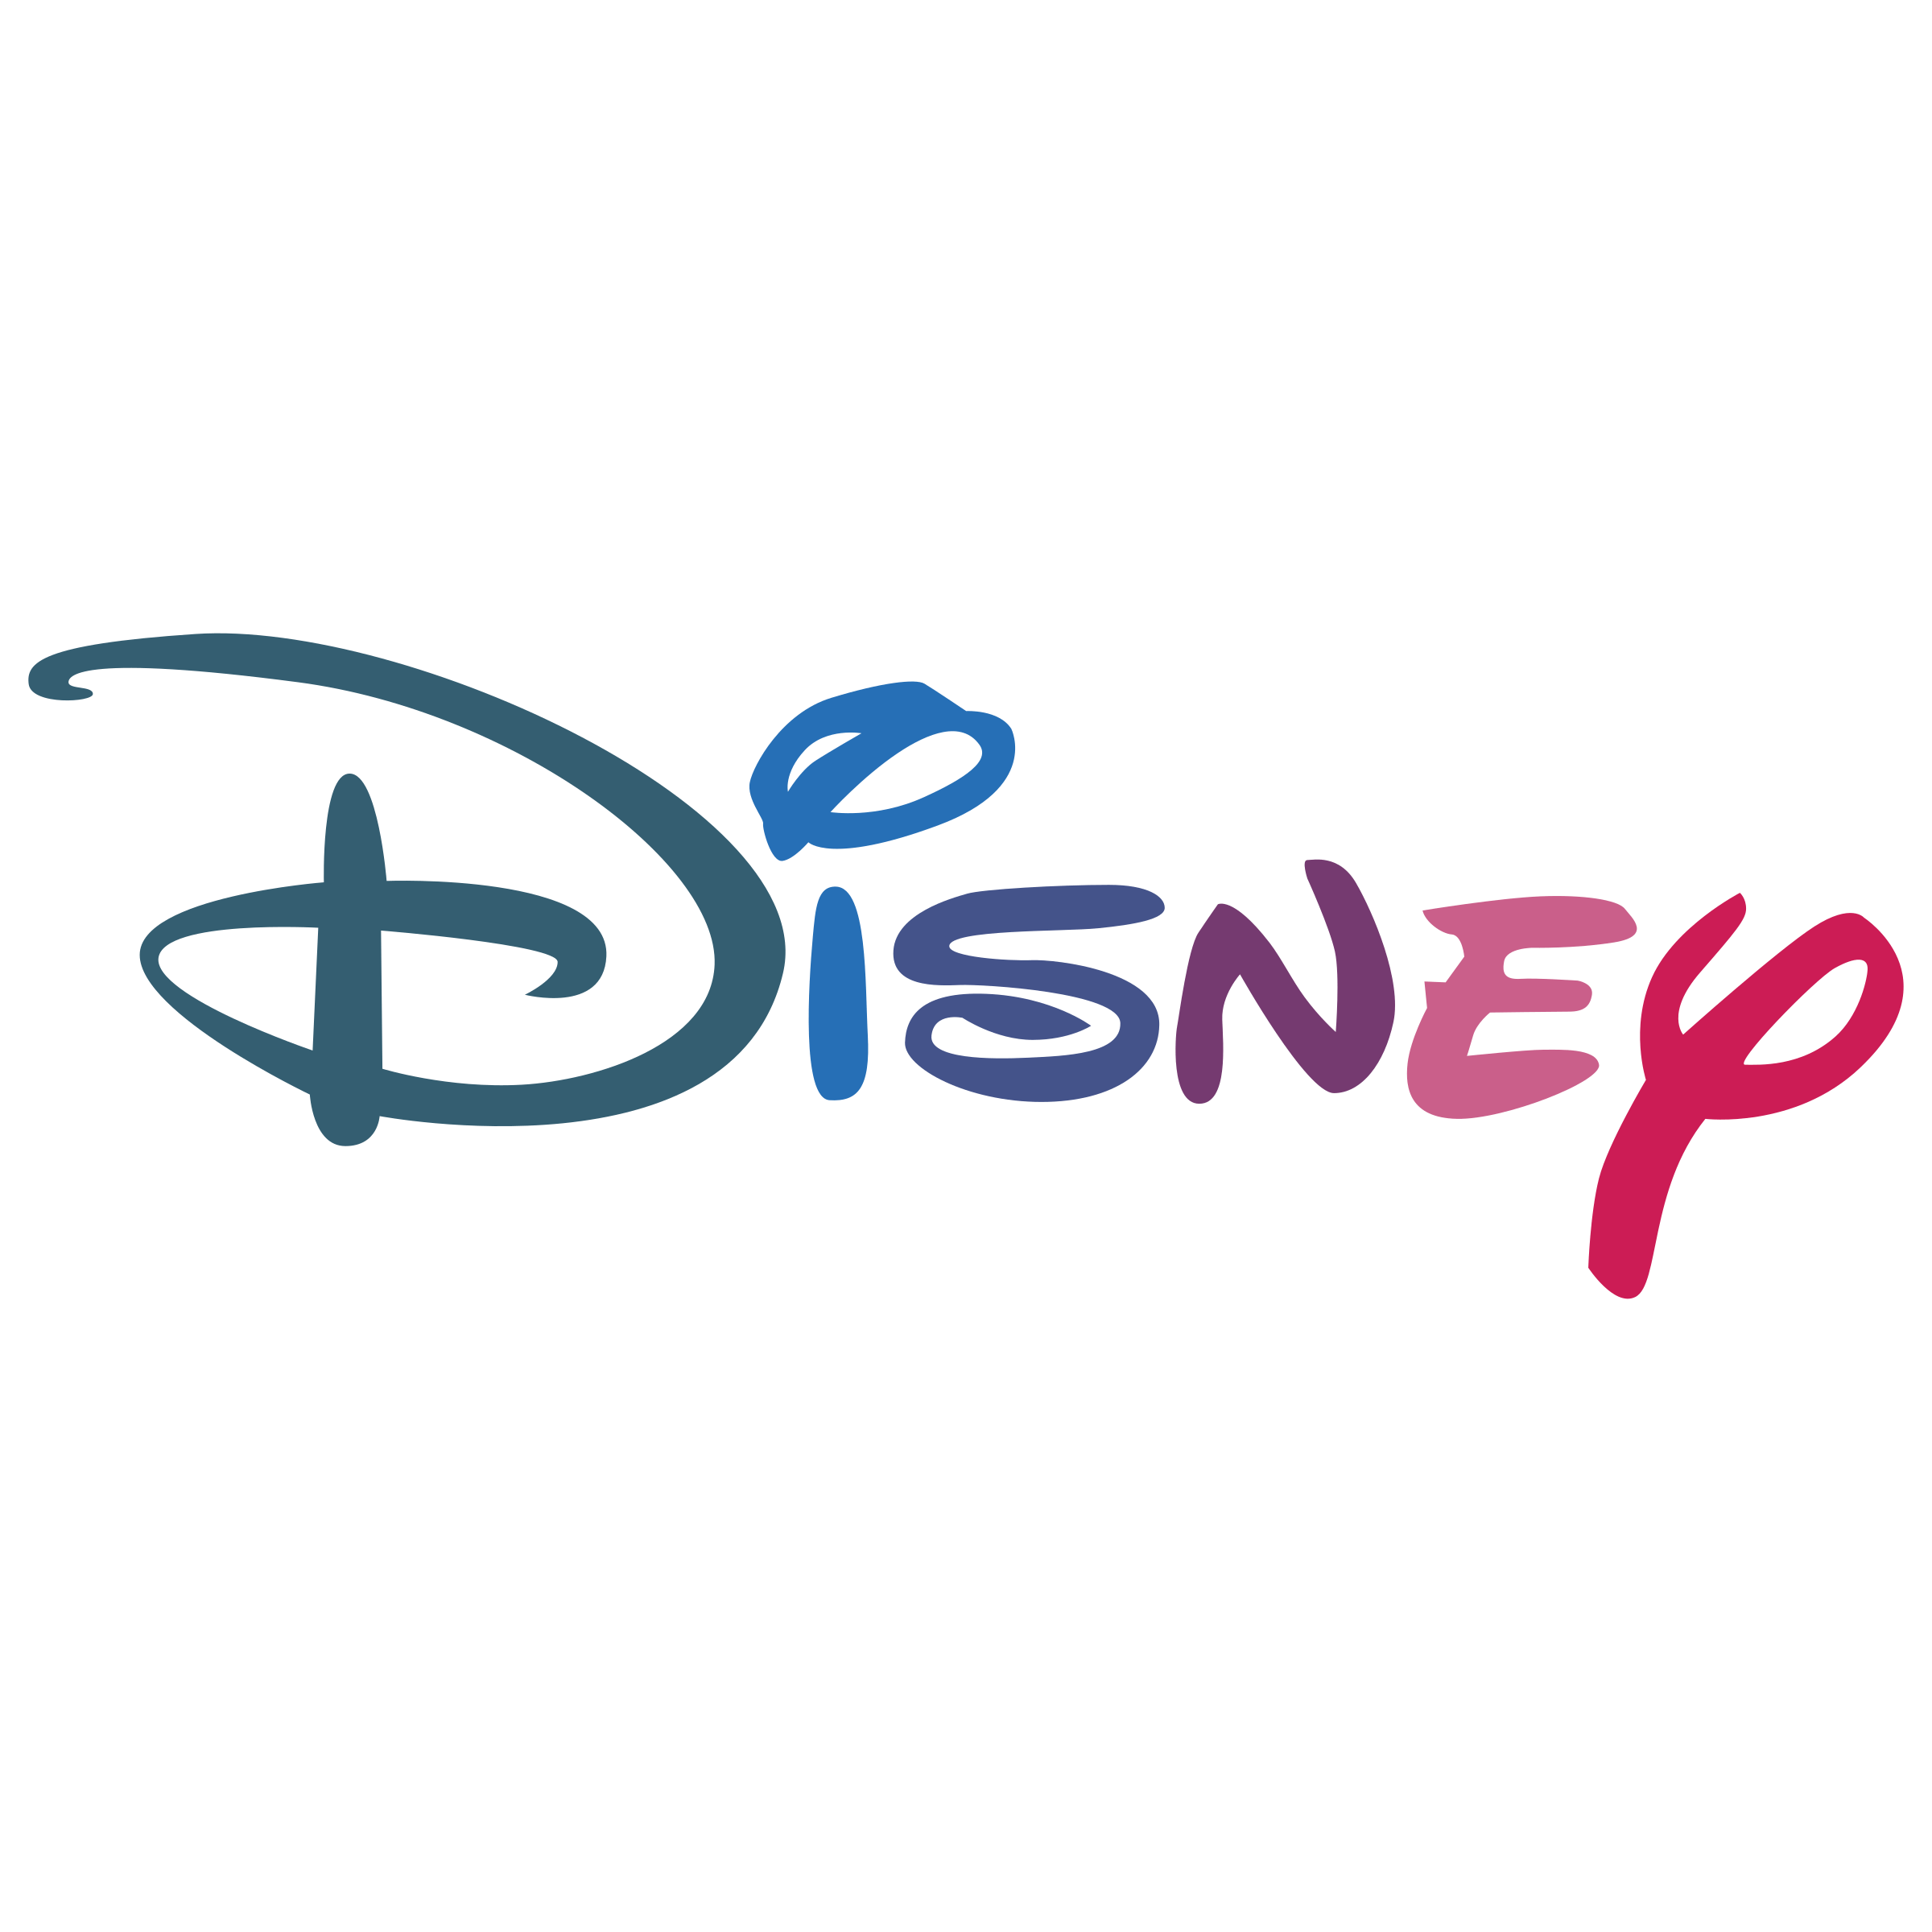 Disneyland D-Logo Logo - Walt Disney logo PNG images free download